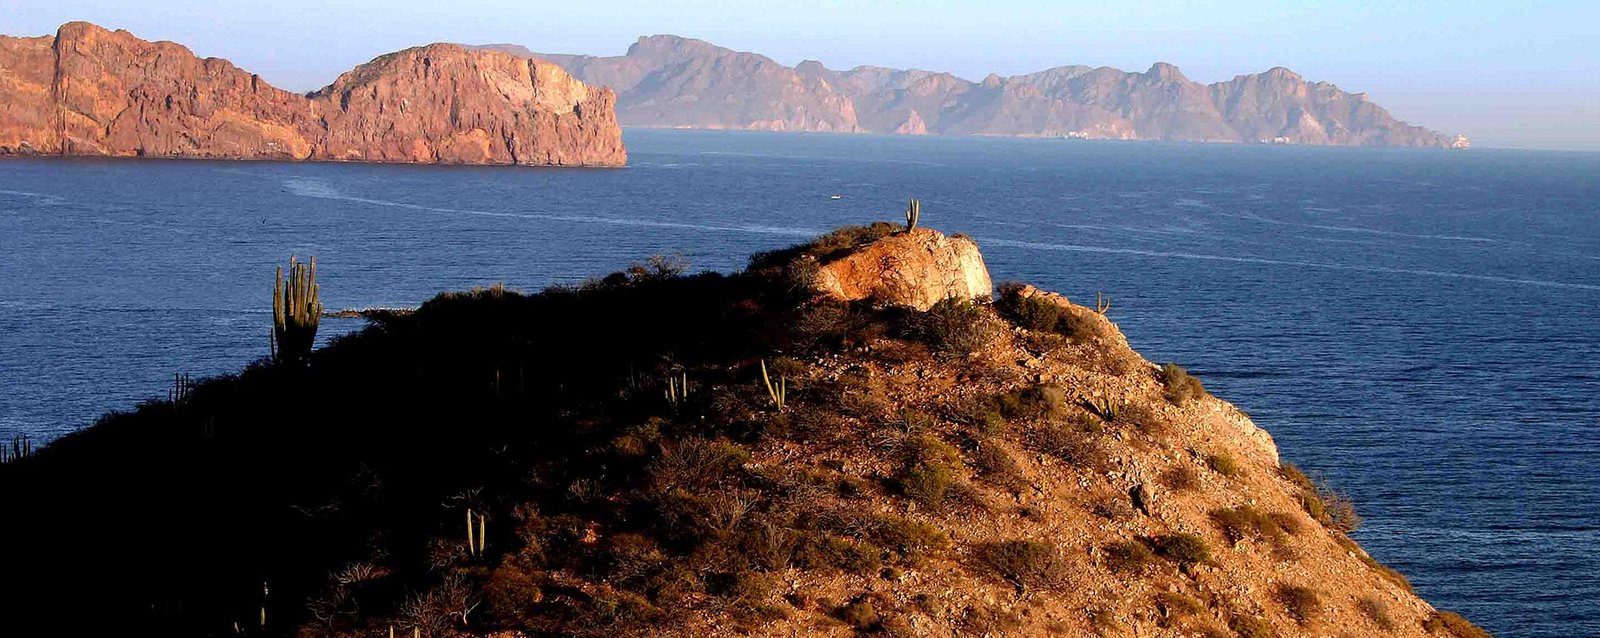 San Carlos - Guaymas